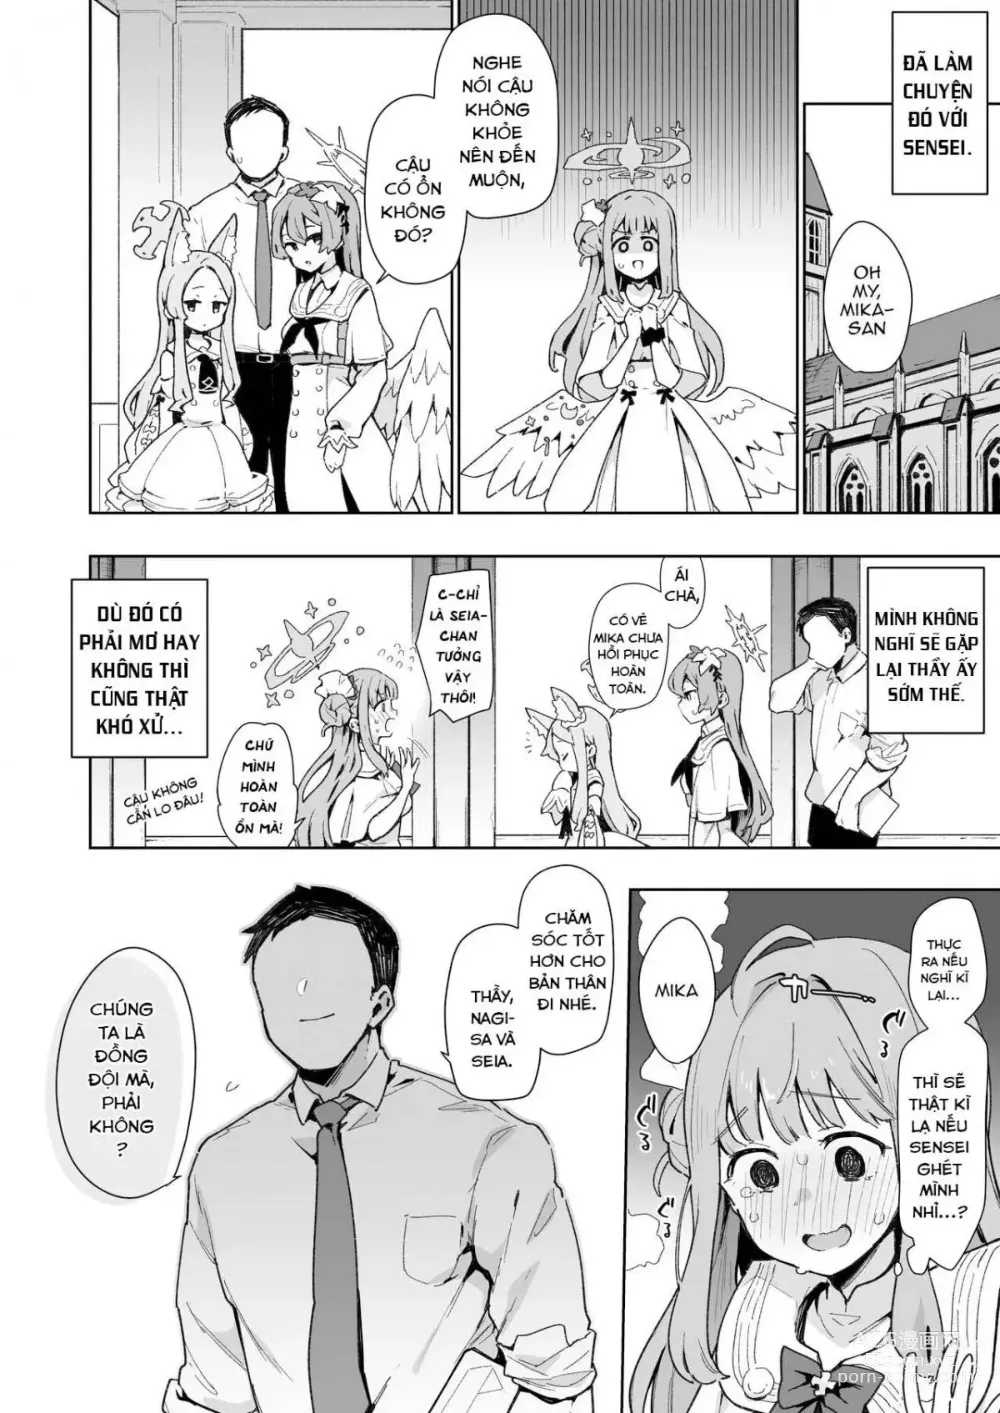 Page 9 of doujinshi Mika muốn bị đạo tàn bụ